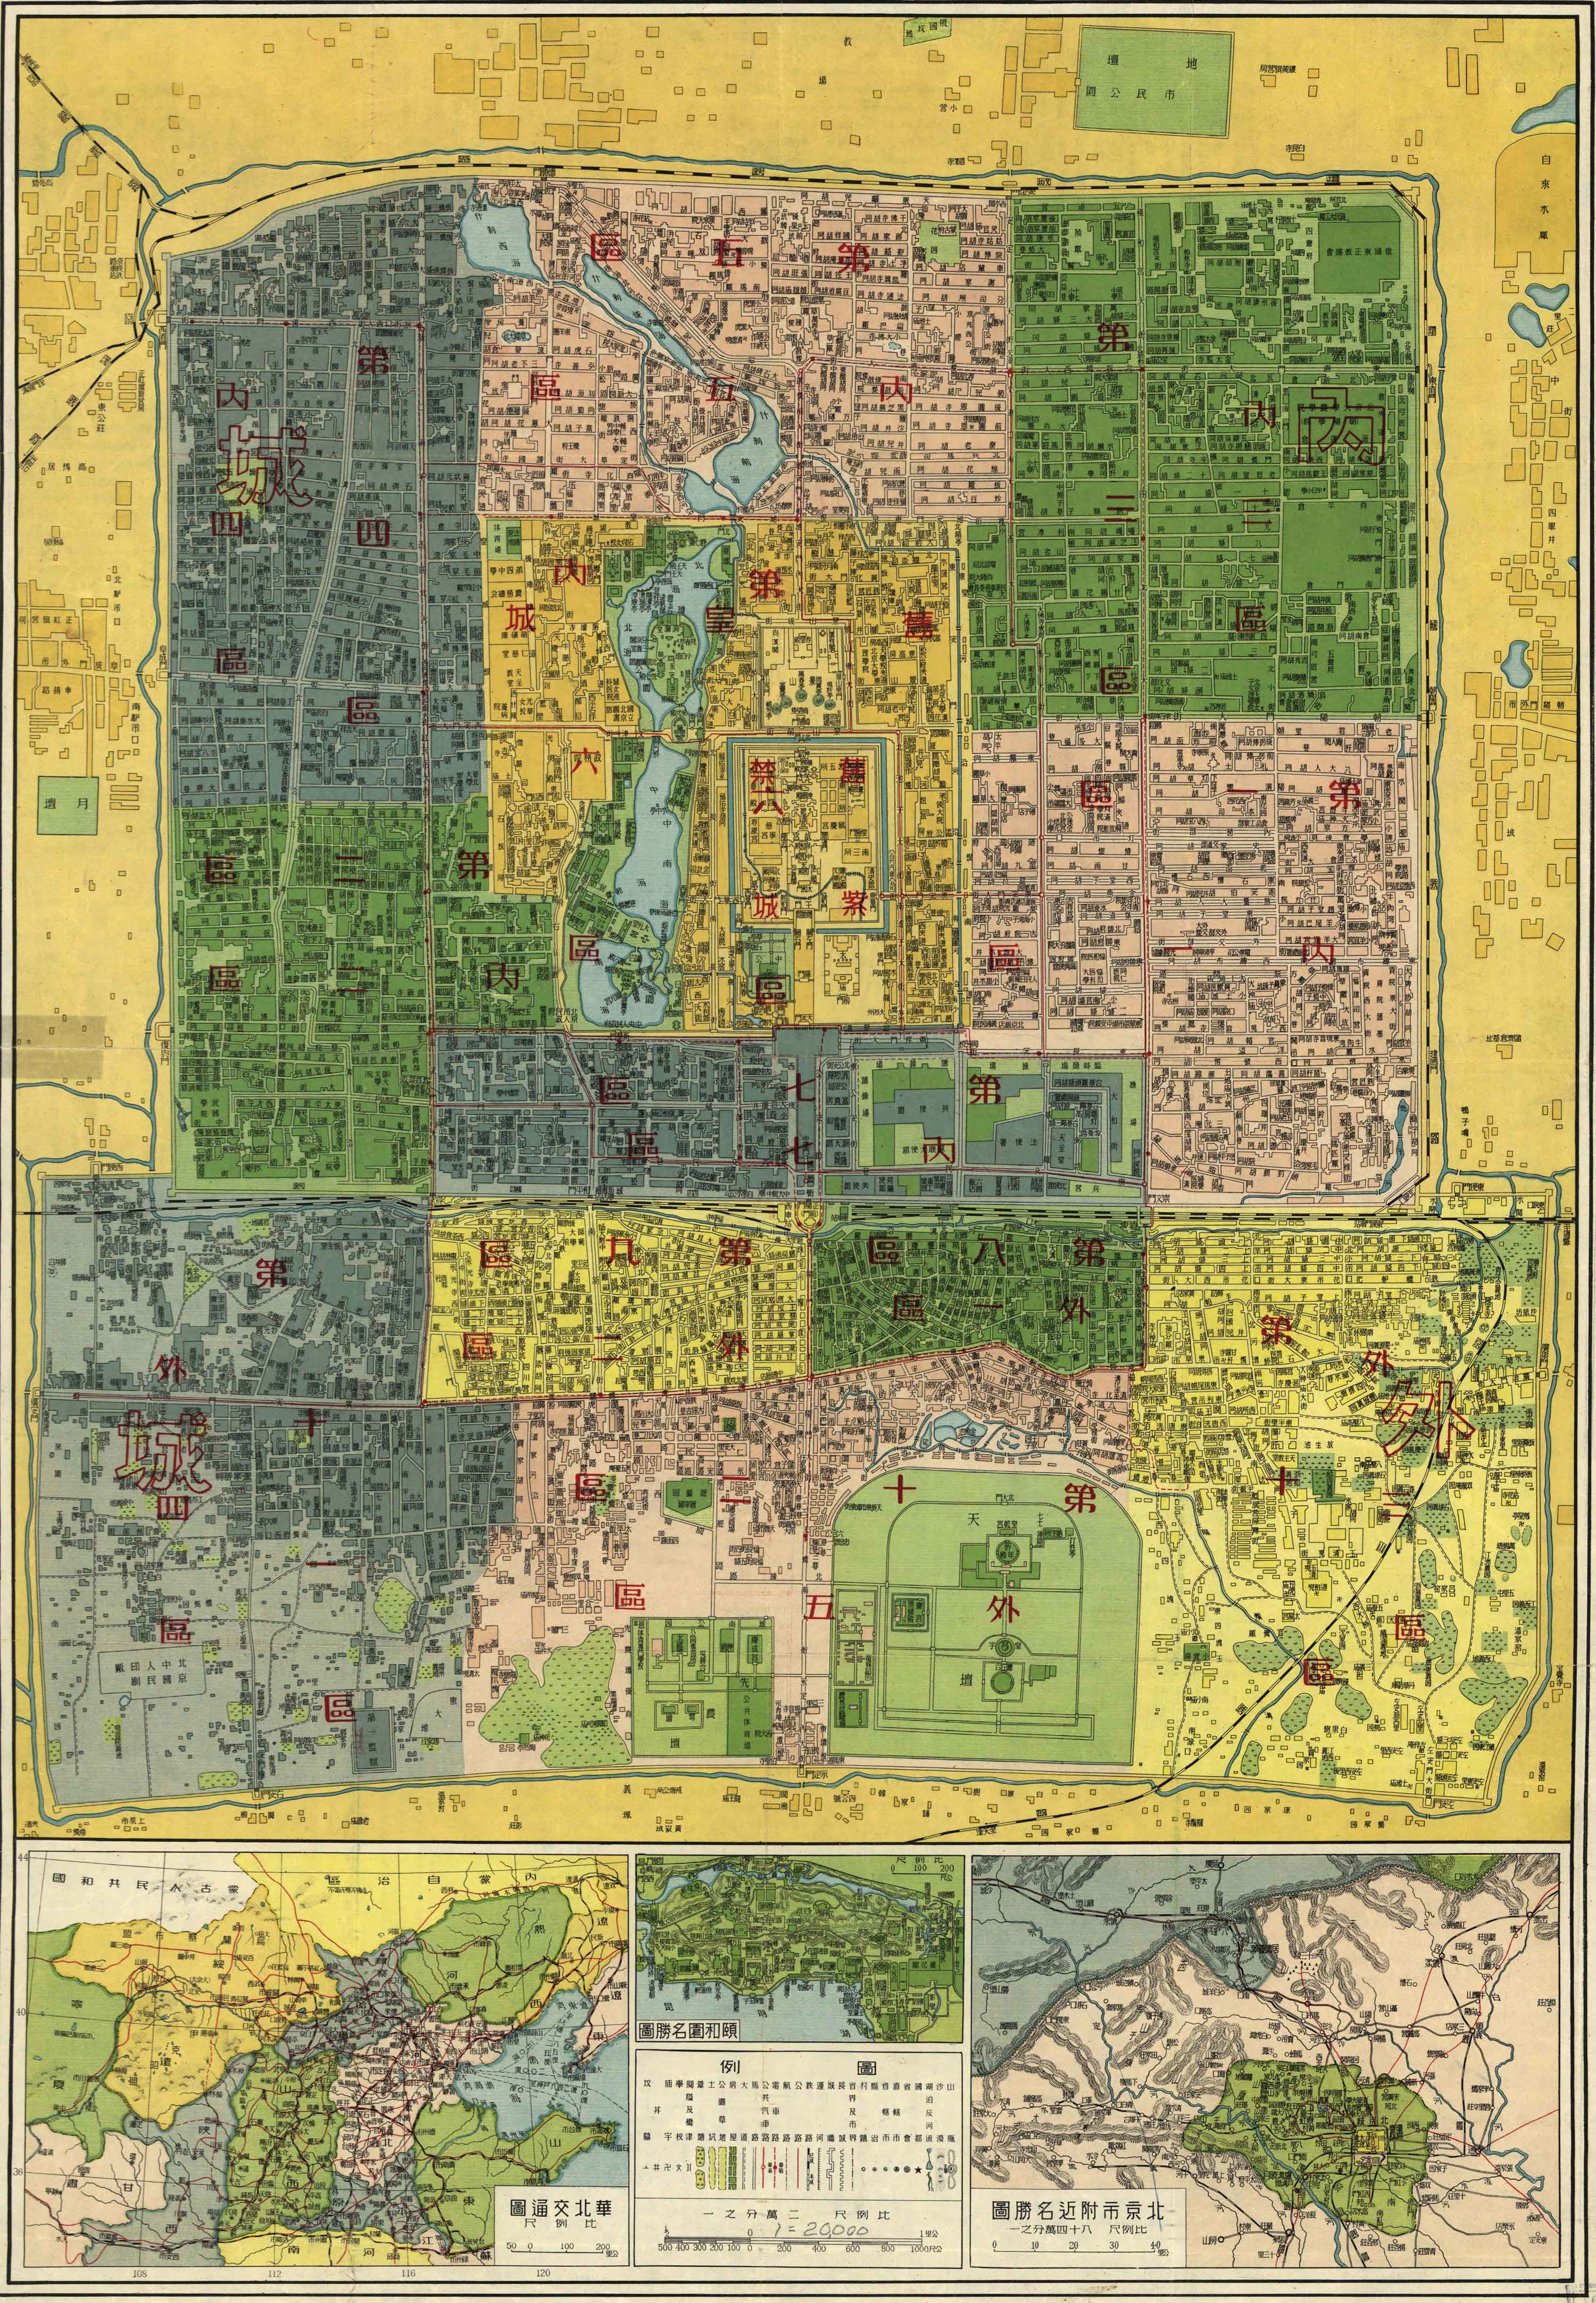 想找一下旧北京地图, 我记得1952年时, 侯仁之教授编写的北京城市沿革